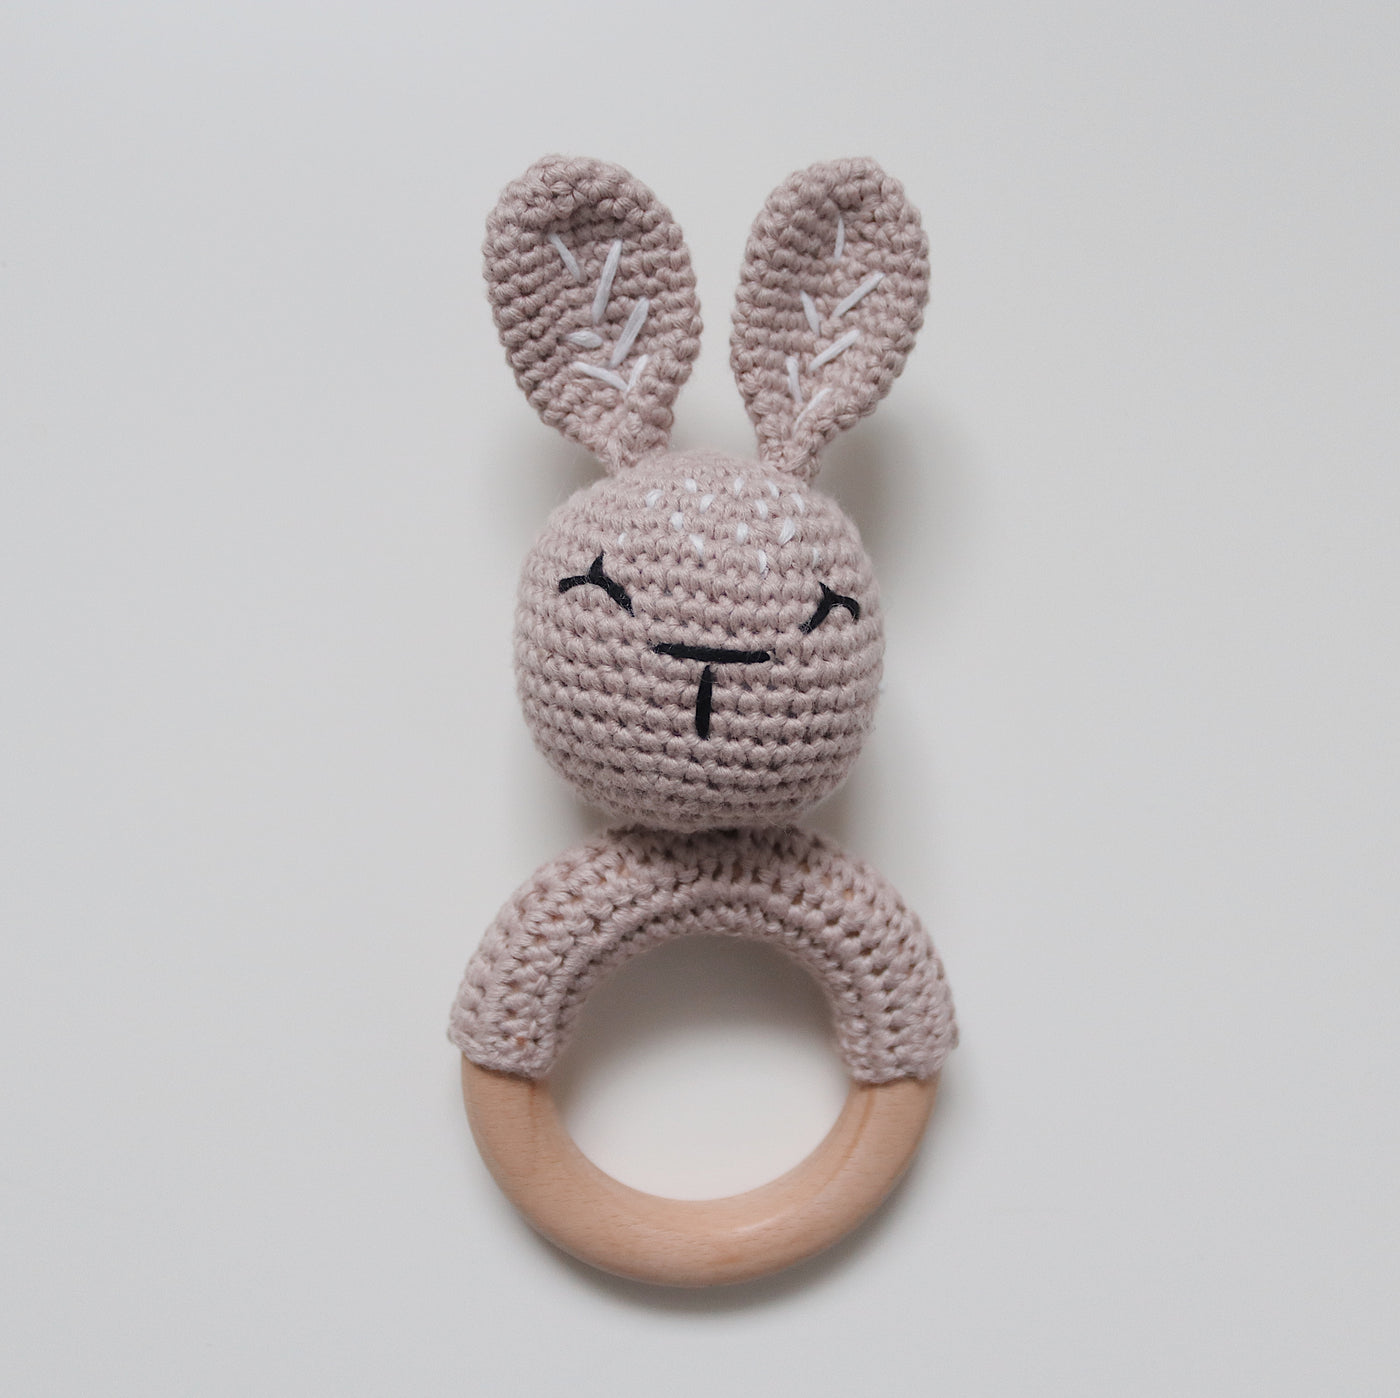 Crochet Baby Rattle Toy | Pale Mauve